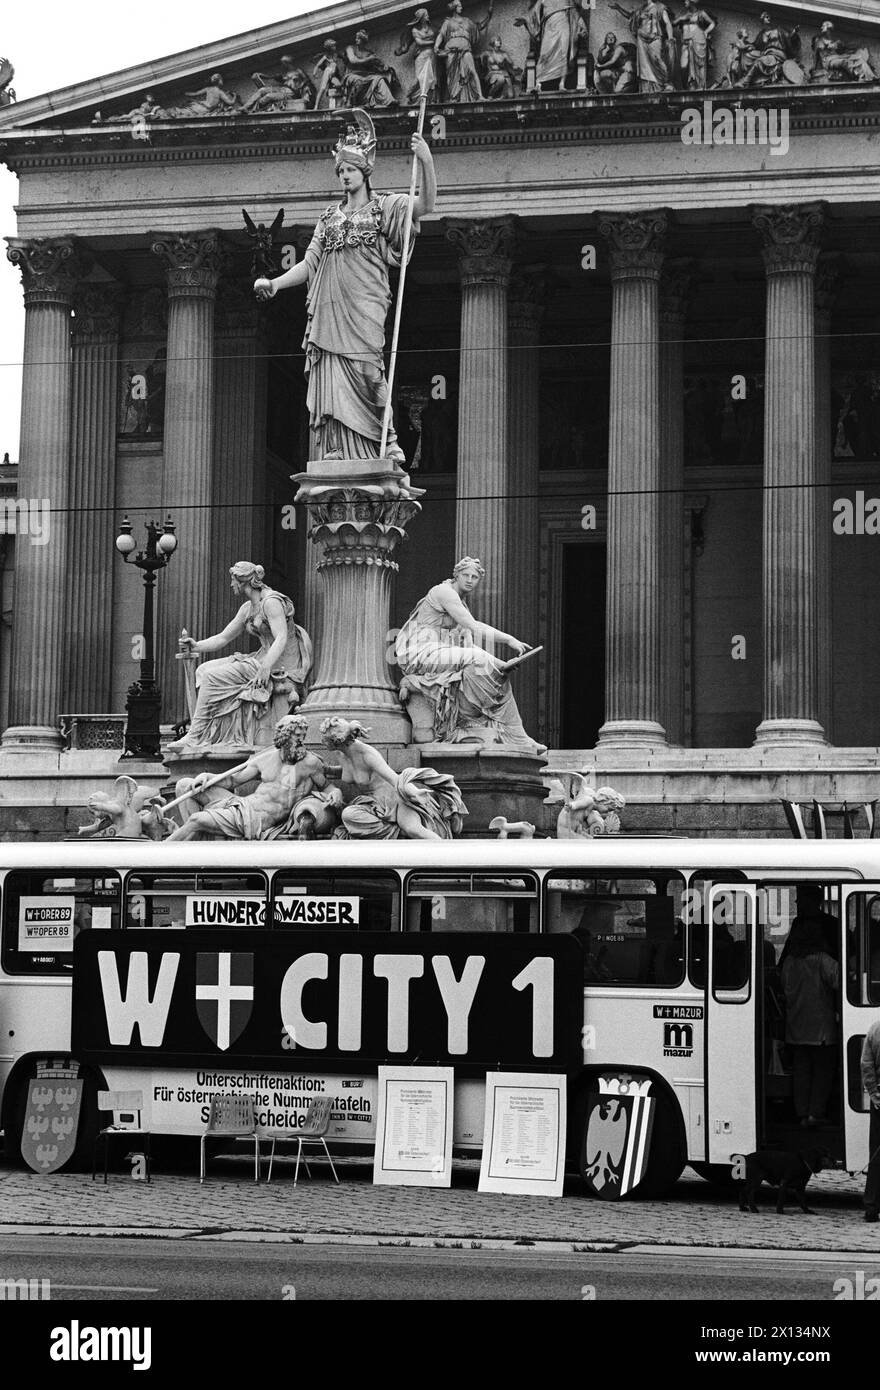 Vienna il 27 settembre 1989: L'artista Friedensreich Hundertwasser ha consegnato 235,000 firme per le sue targhe ai presidenti delle frazioni parlamentari. Nella foto: L'autobus austriaco di Hundertwasser davanti al parlamento. - 19890927 PD0015 - Rechteinfo: Diritti gestiti (RM) Foto Stock